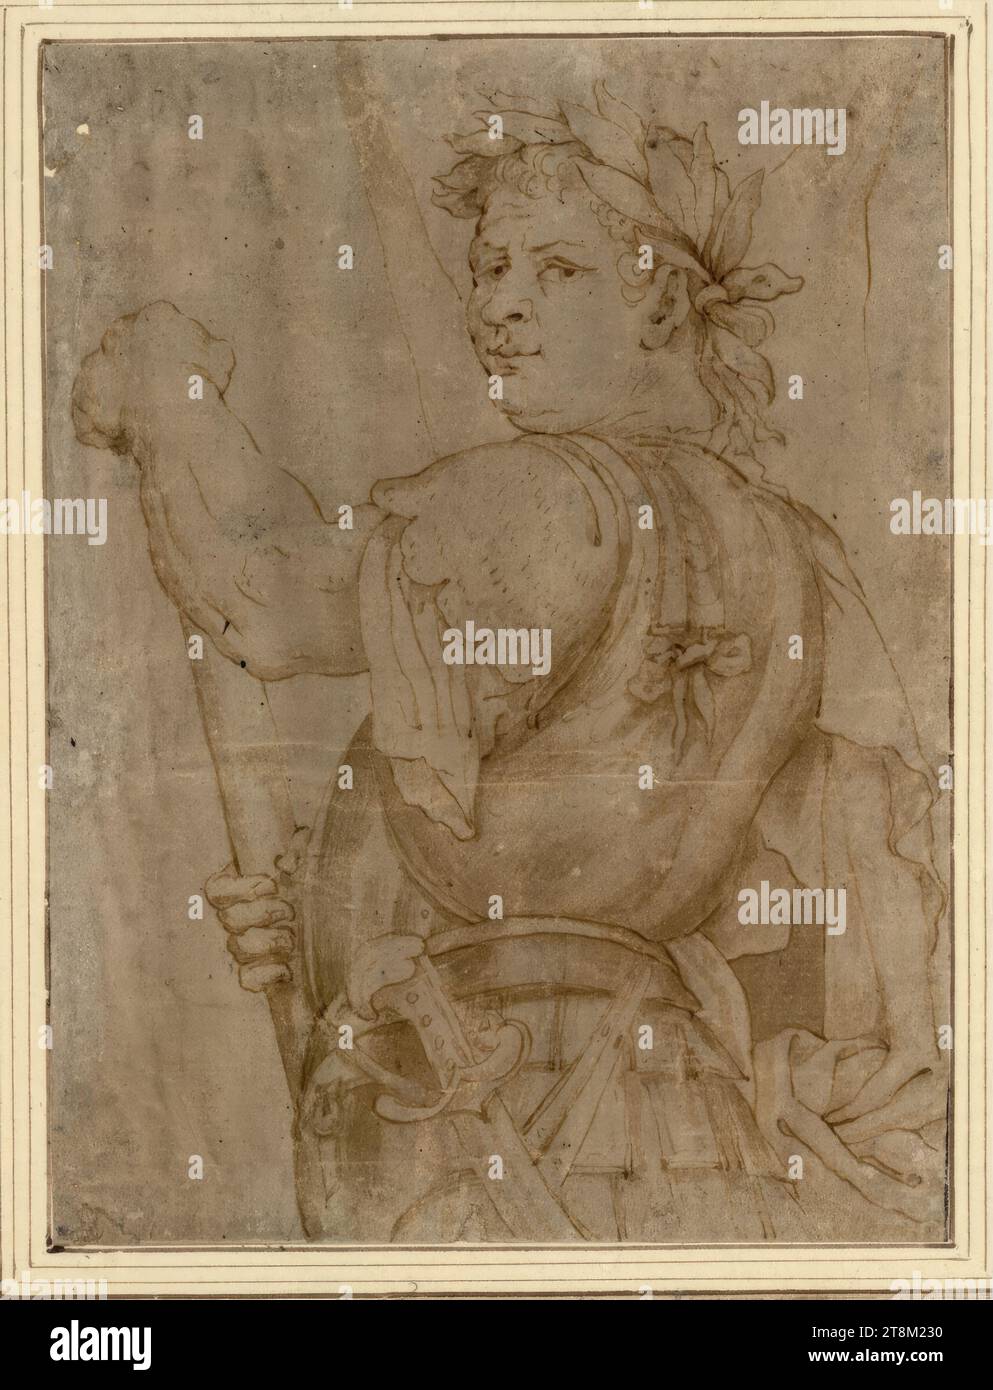 Titus, anonym, Zeichnen, Stift, Tinte, gewaschen, 19 x 14,5 cm, l.l., Herzog Albert von Sachsen-Teschen, oben links in Bleistift '2 Stockfoto